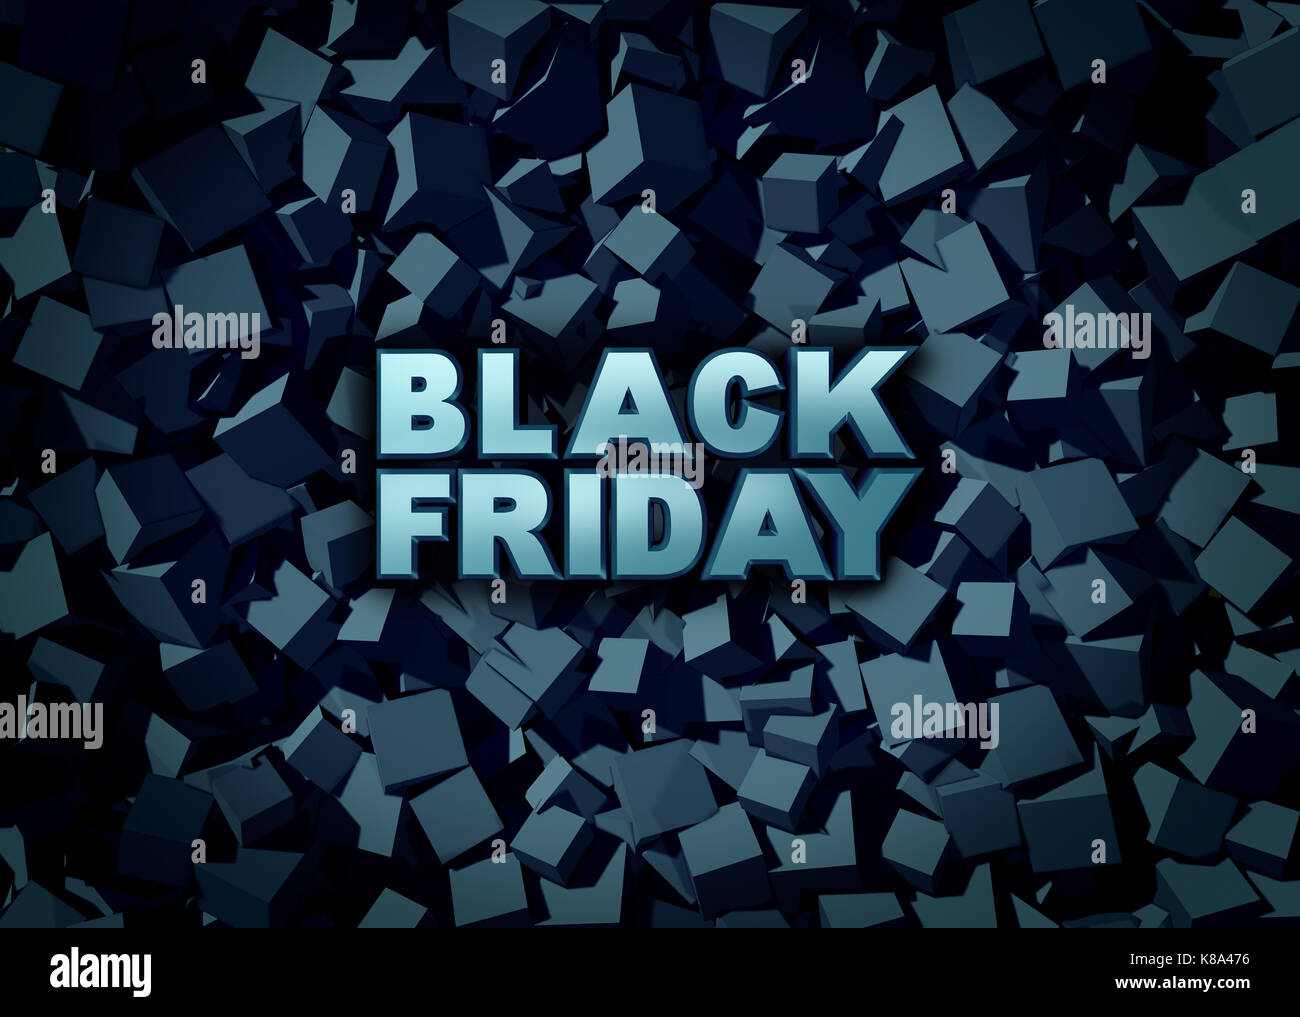 Schwarzer Freitag Förderung Zeichen als Verkauf Banner als Text auf dunklem Hintergrund Ferienzeit Shopping für niedrige Preise im Einzelhandel offerin zu feiern. Stockfoto